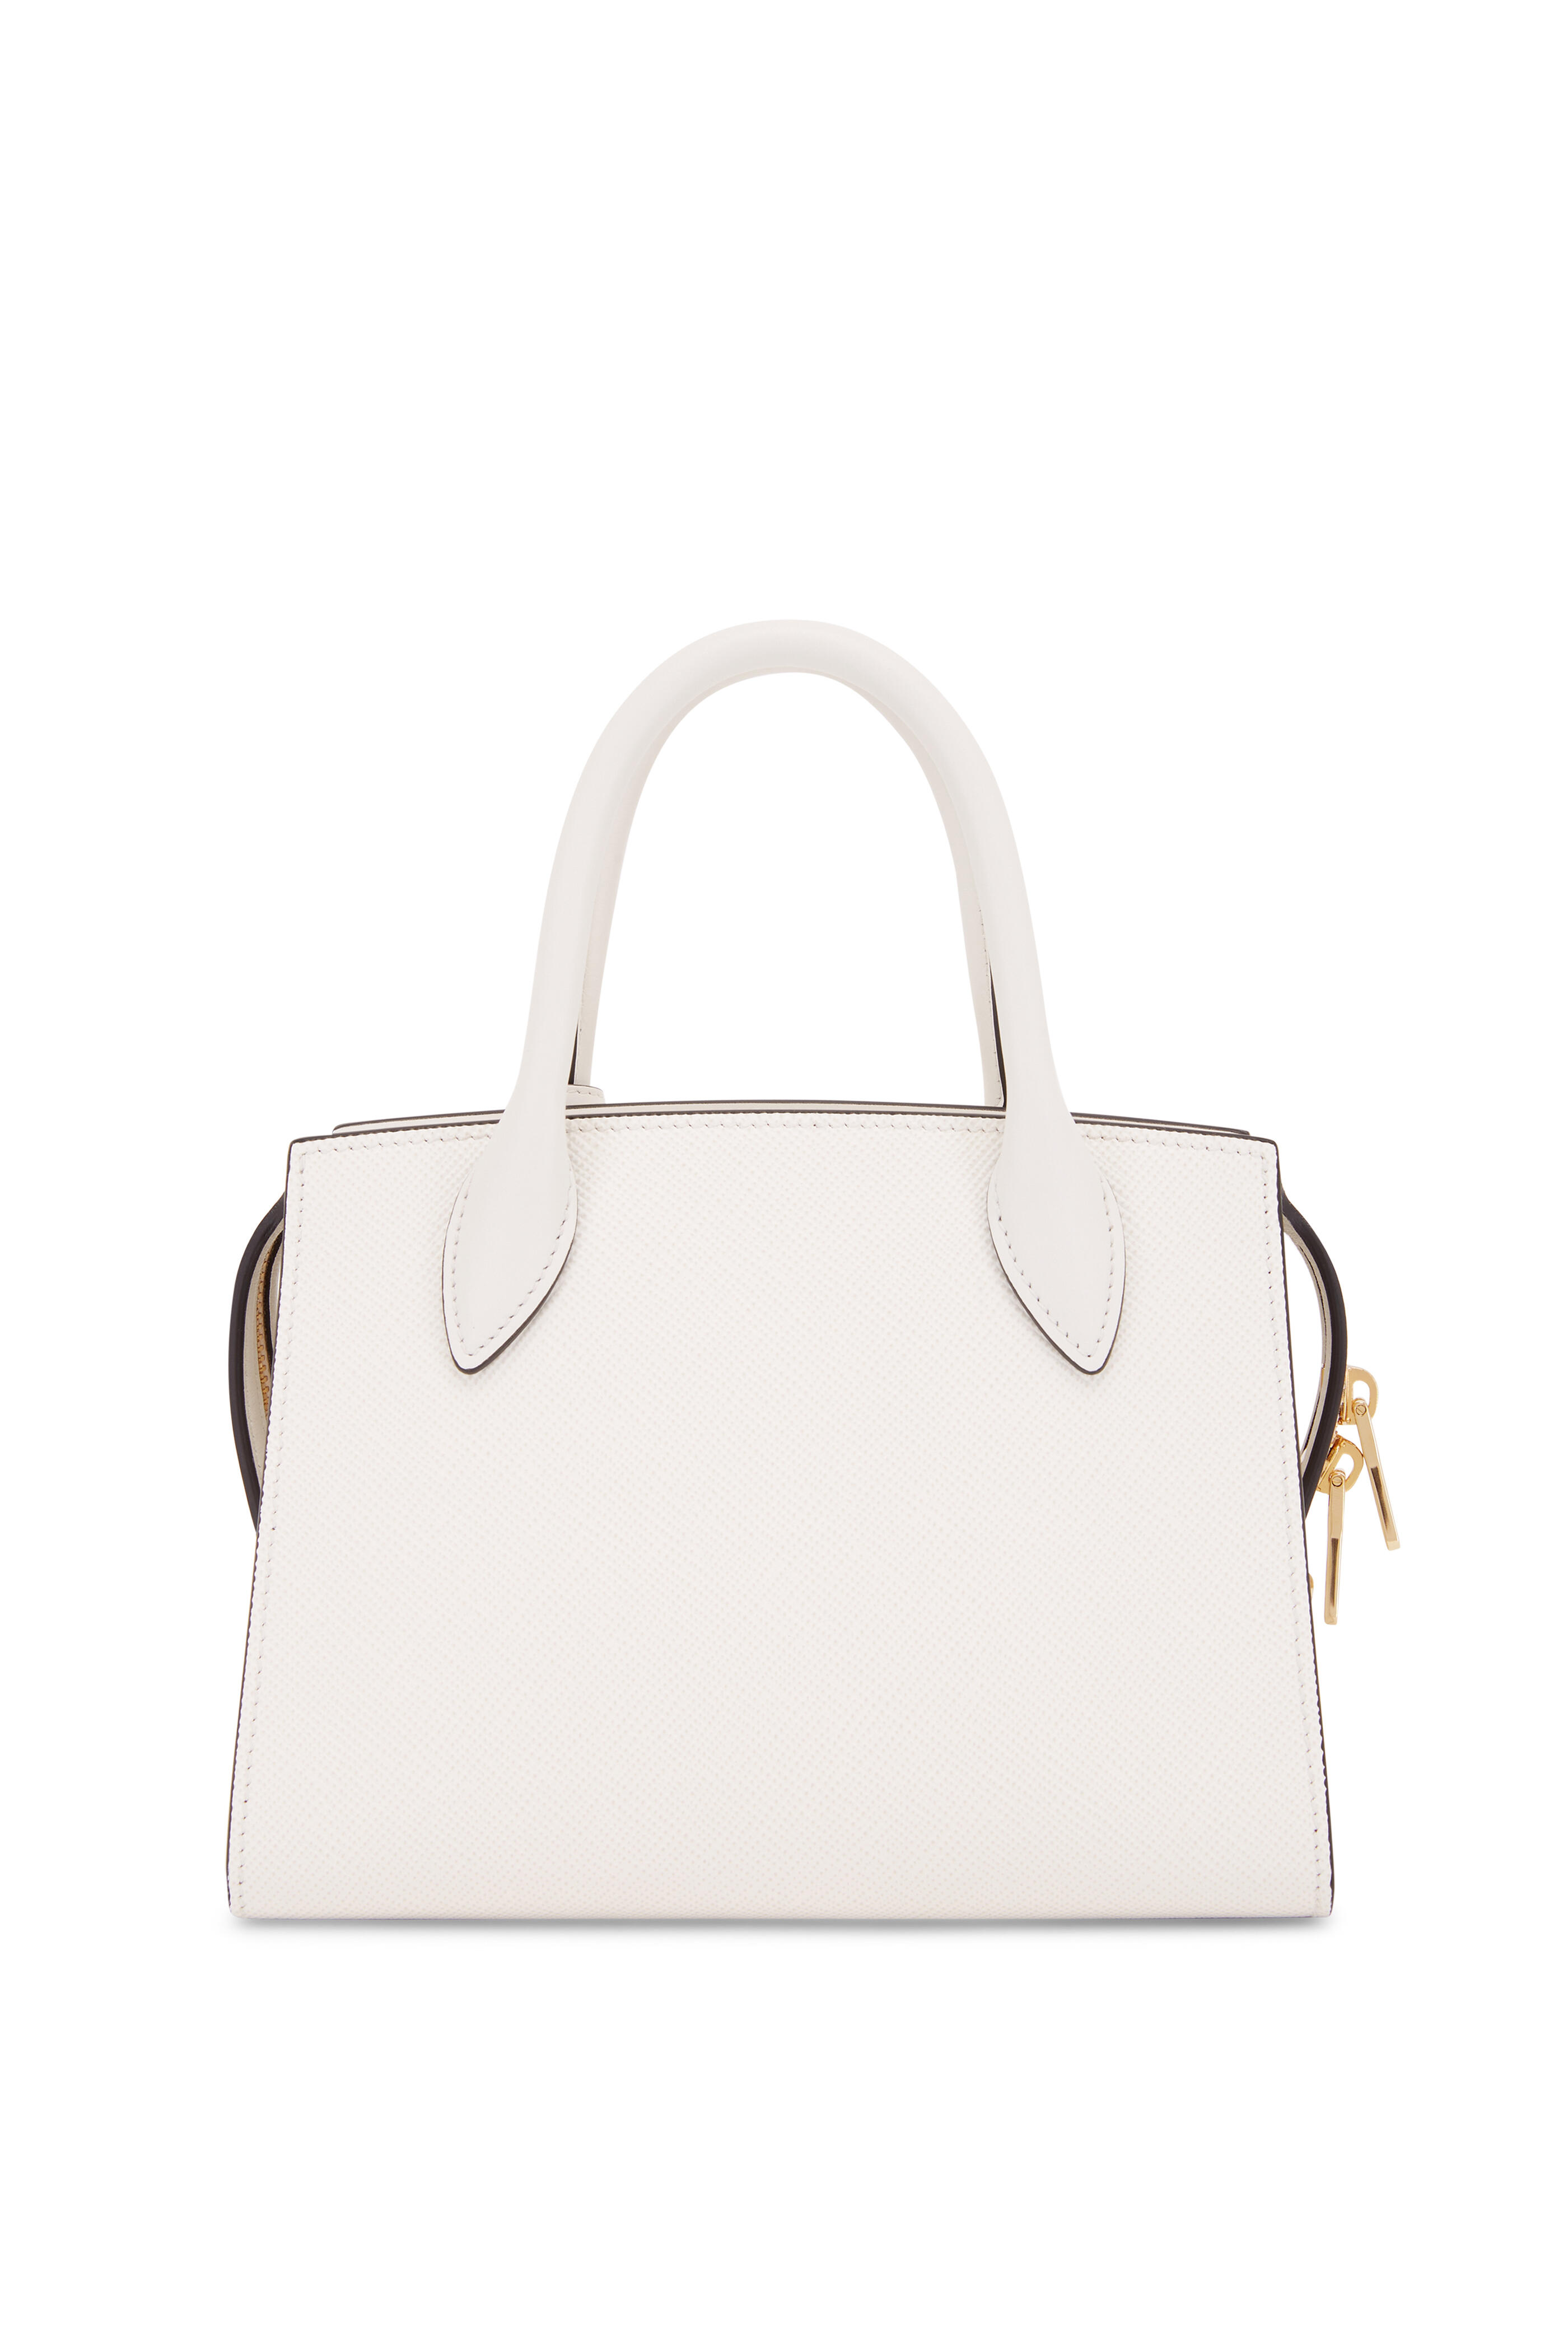 Prada Monochrome Saffiano Leather Shoulder Bag In White